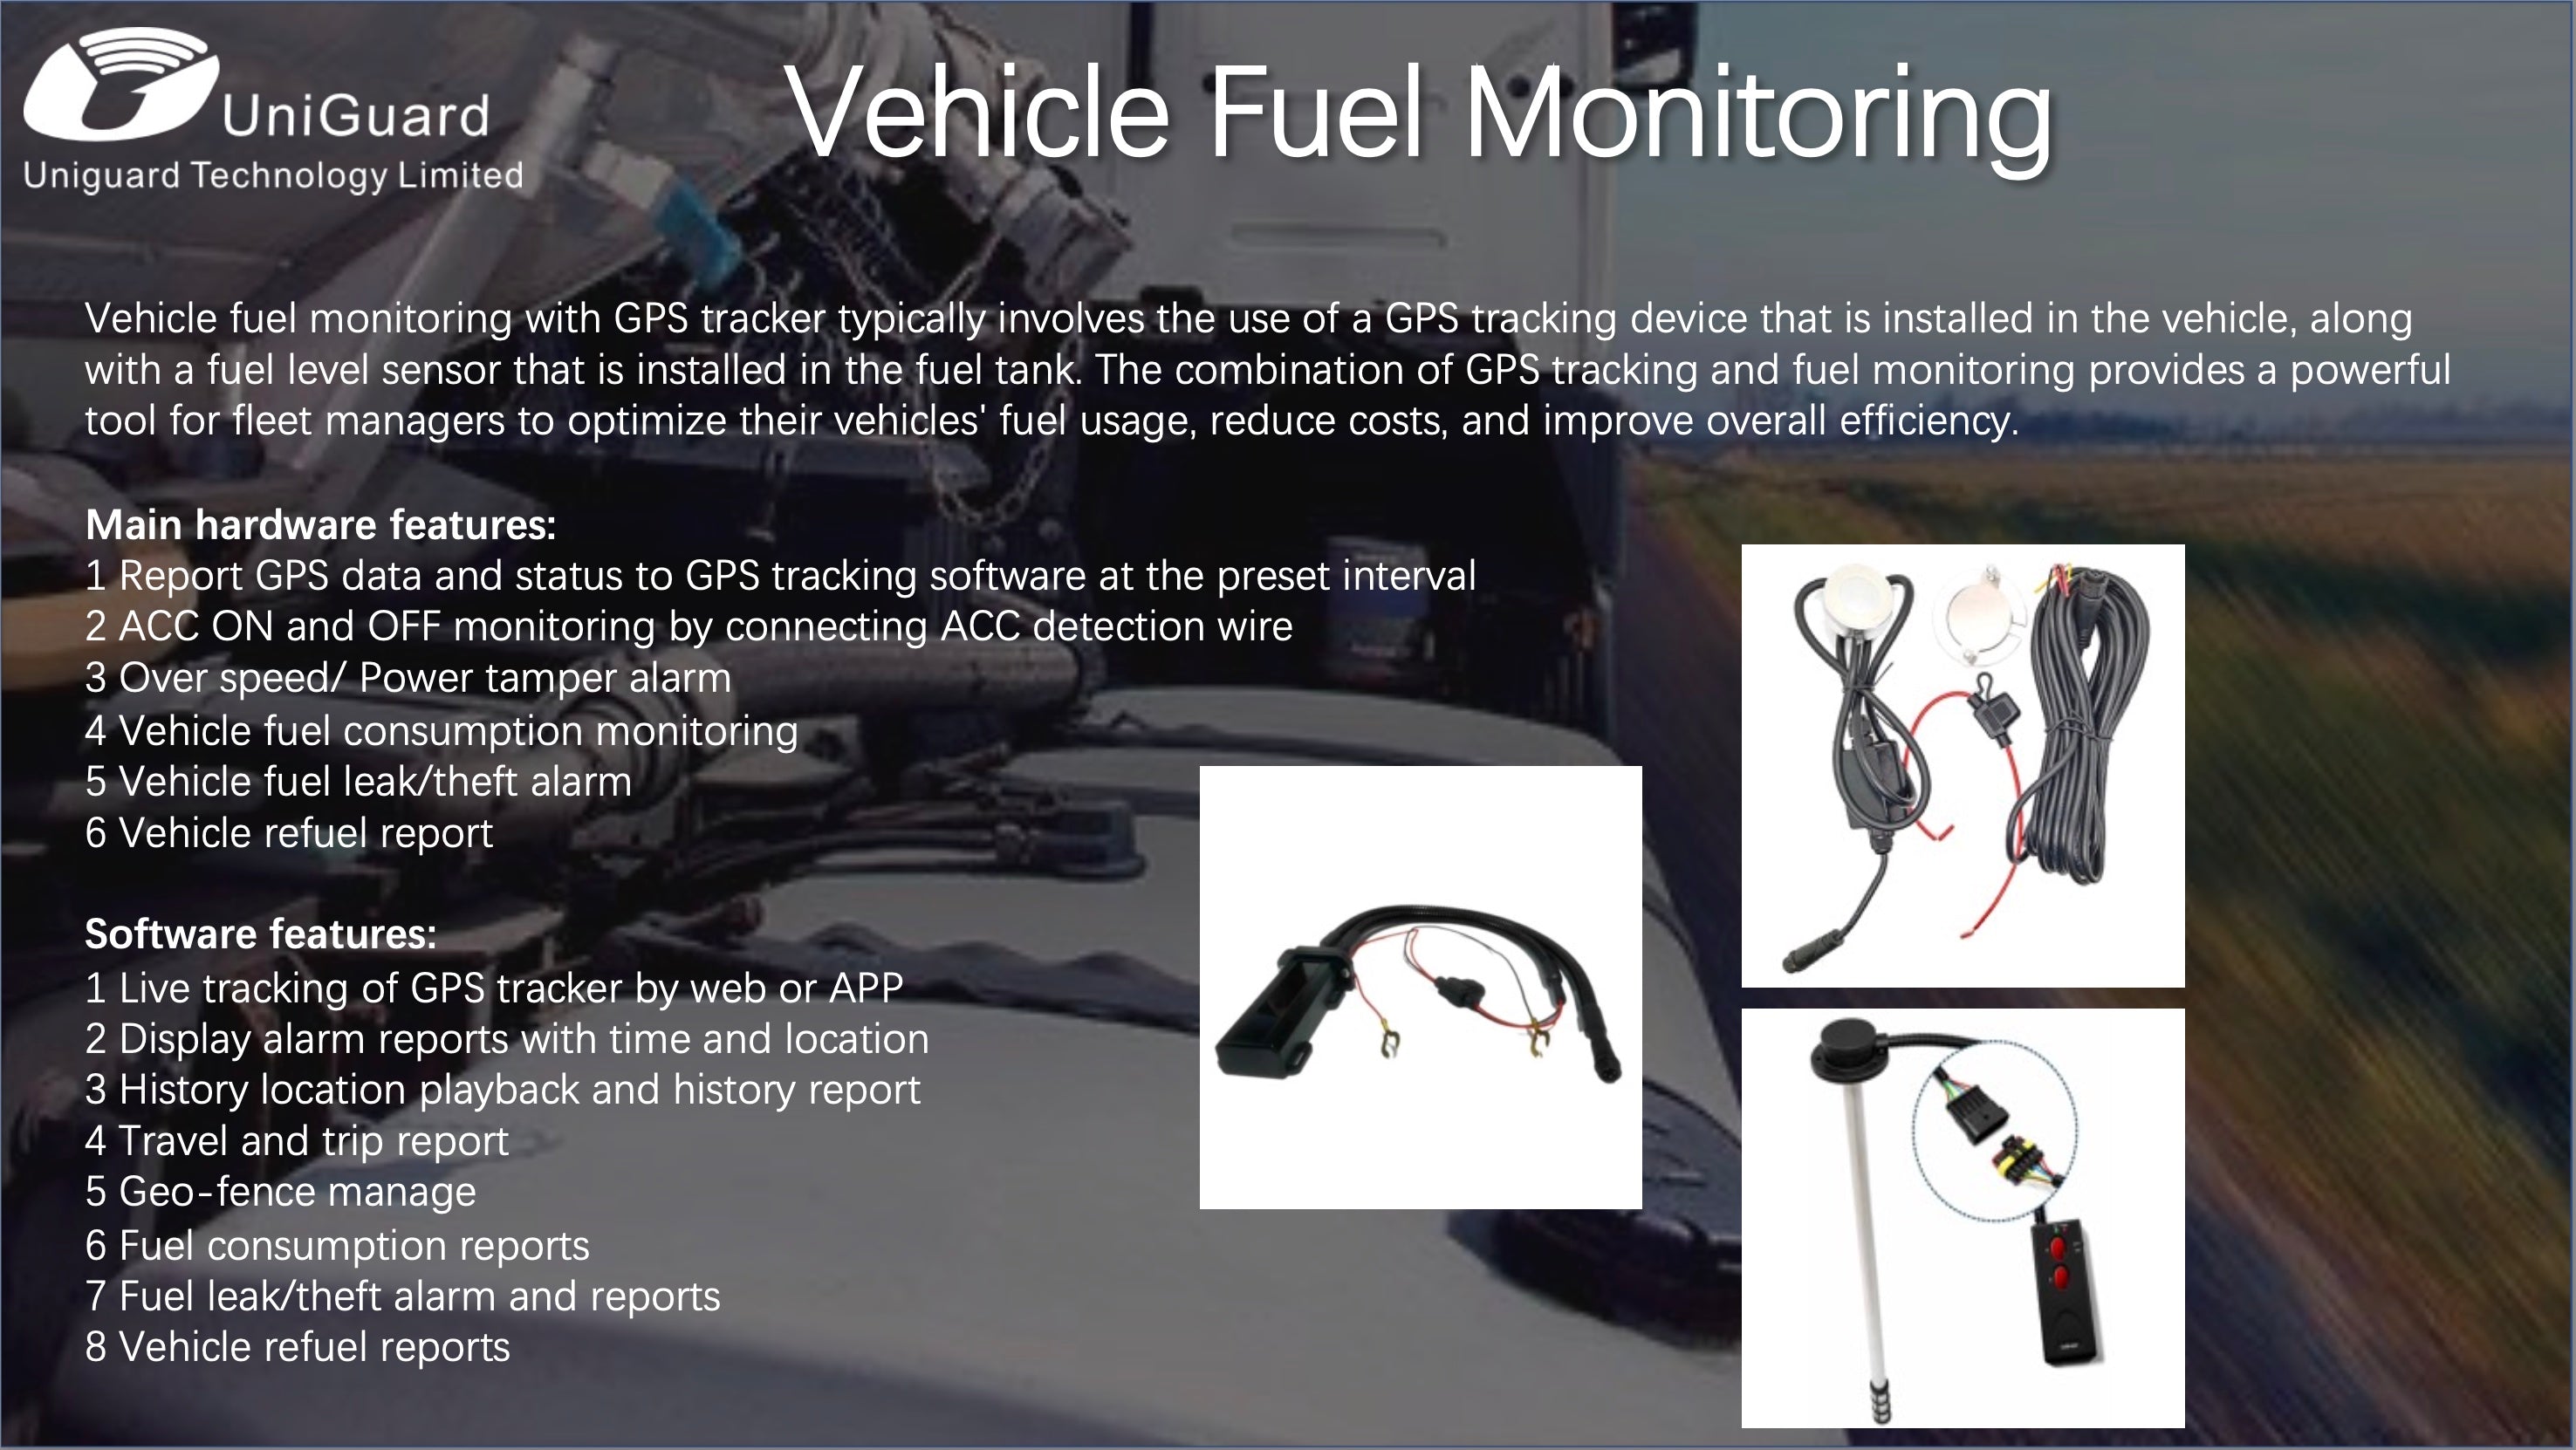 monitoramento do consumo de combustível do veículo